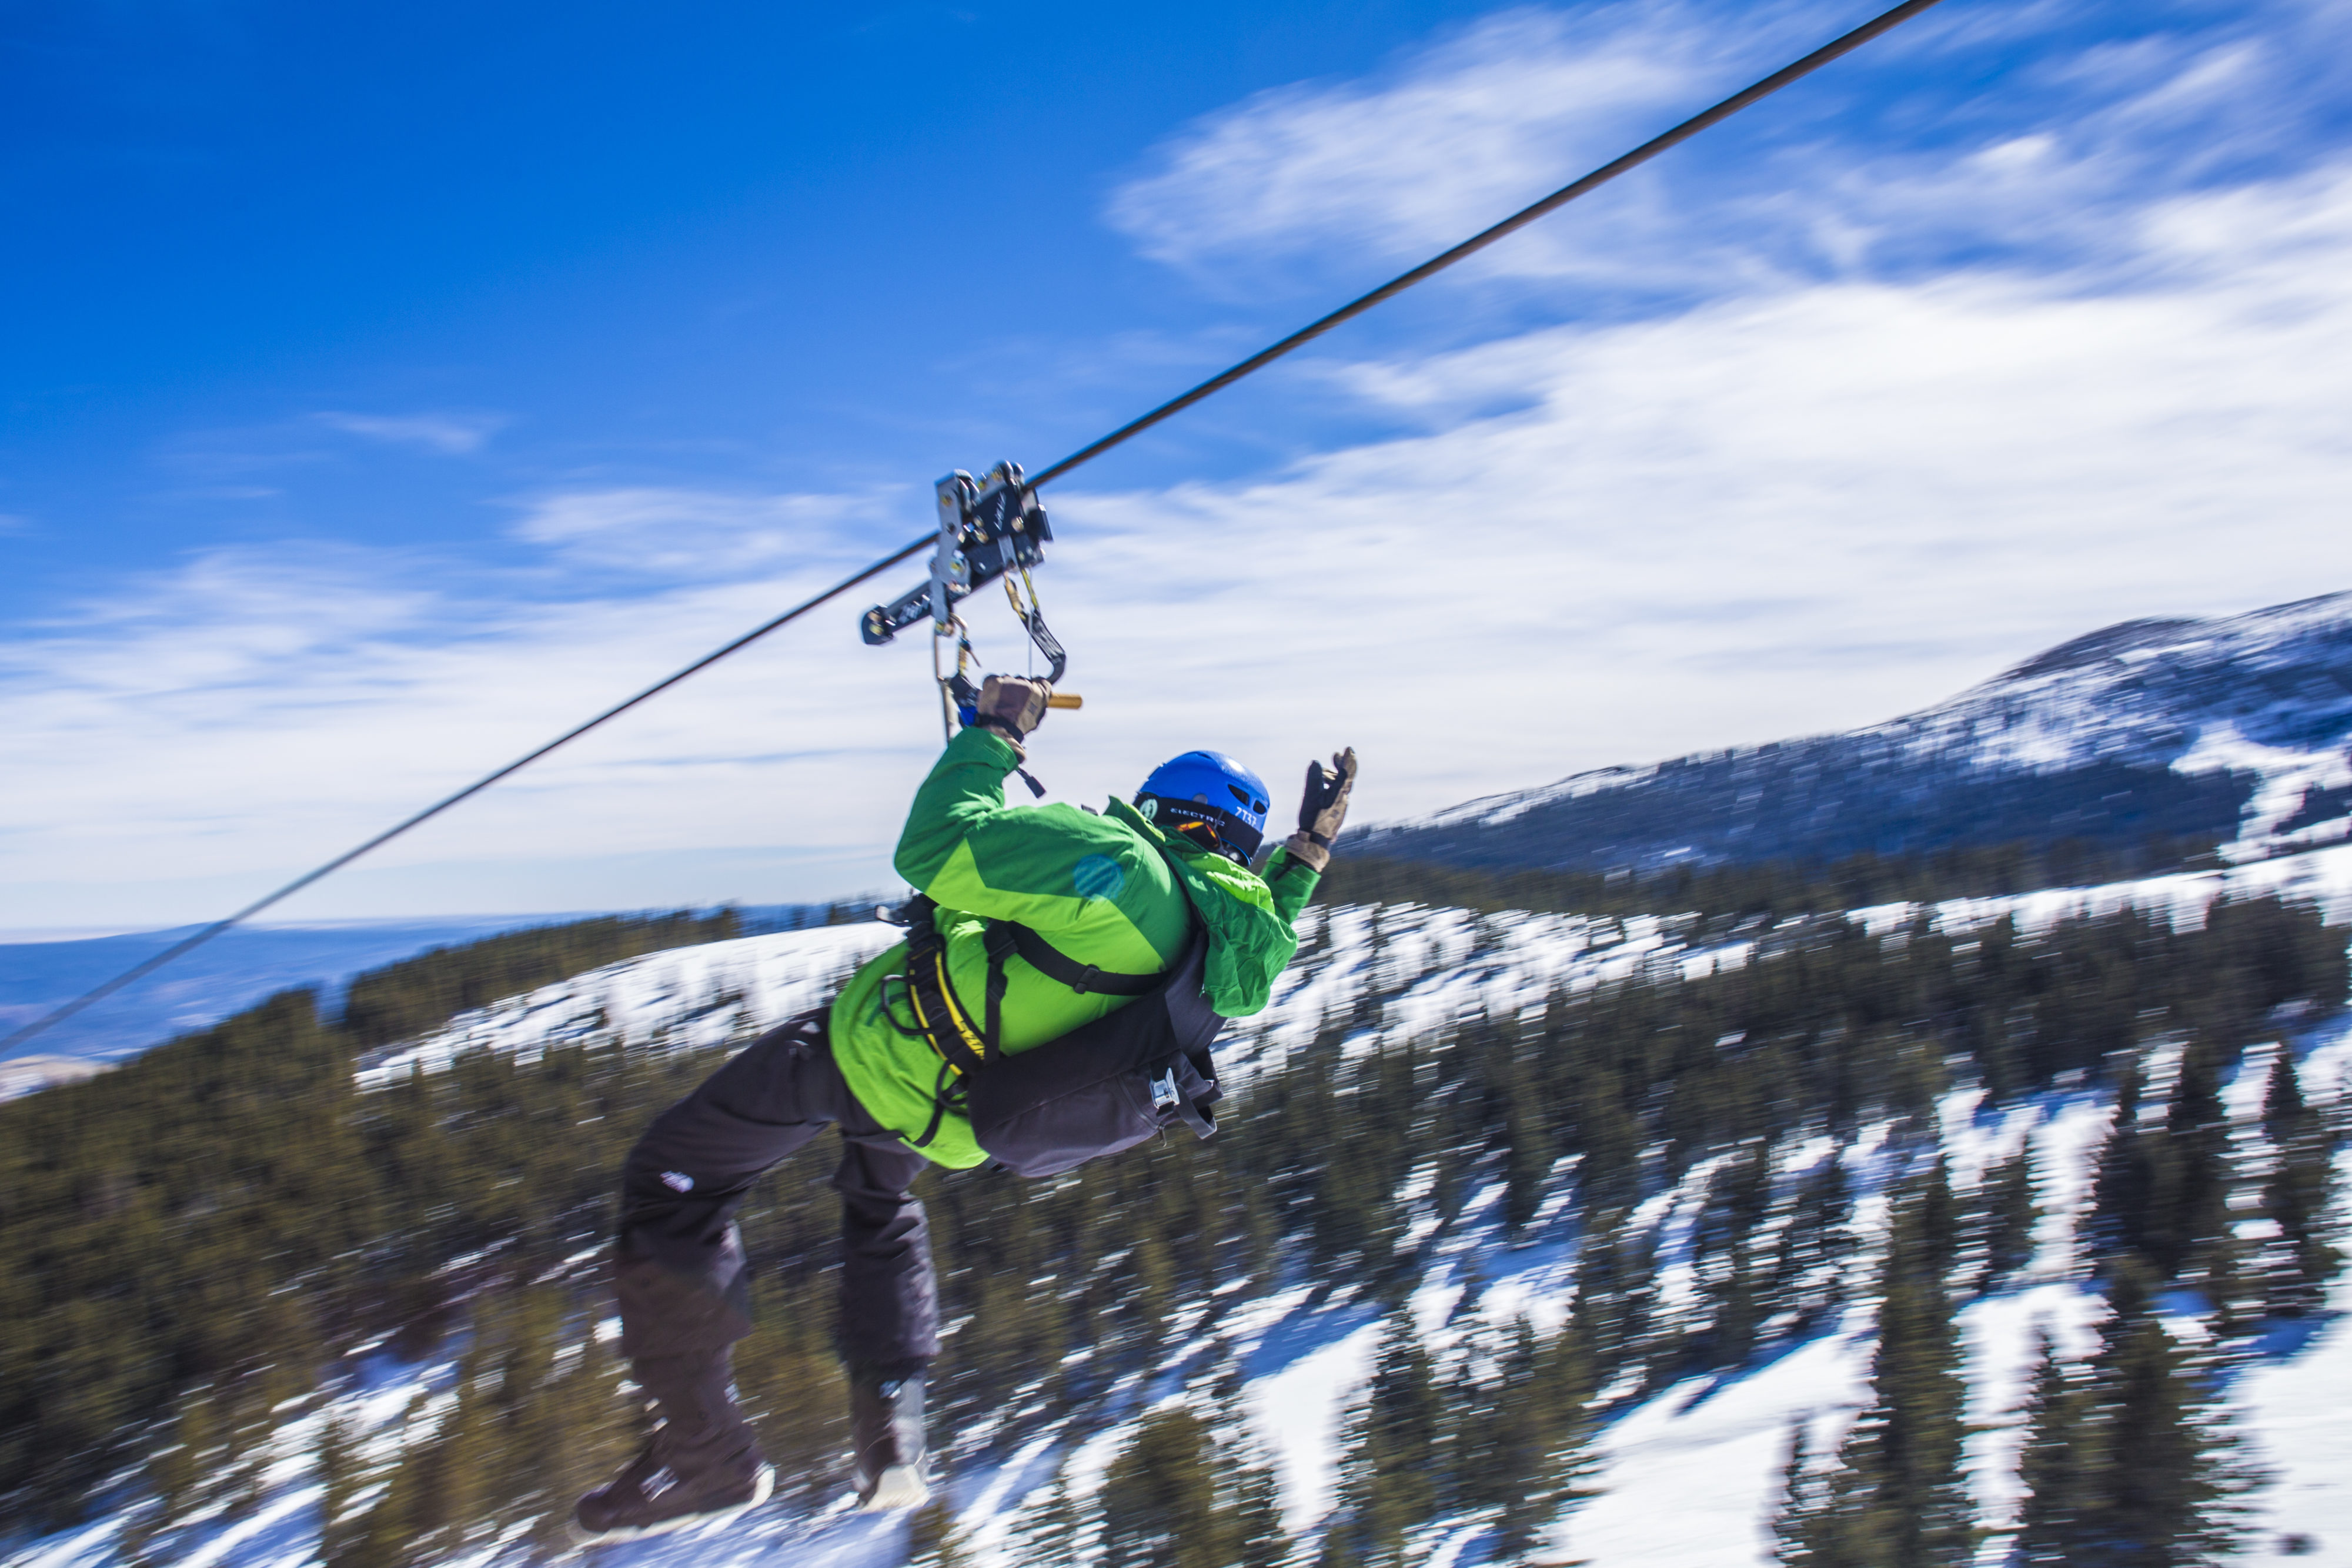 Wind Rider zipline at Ski Apache